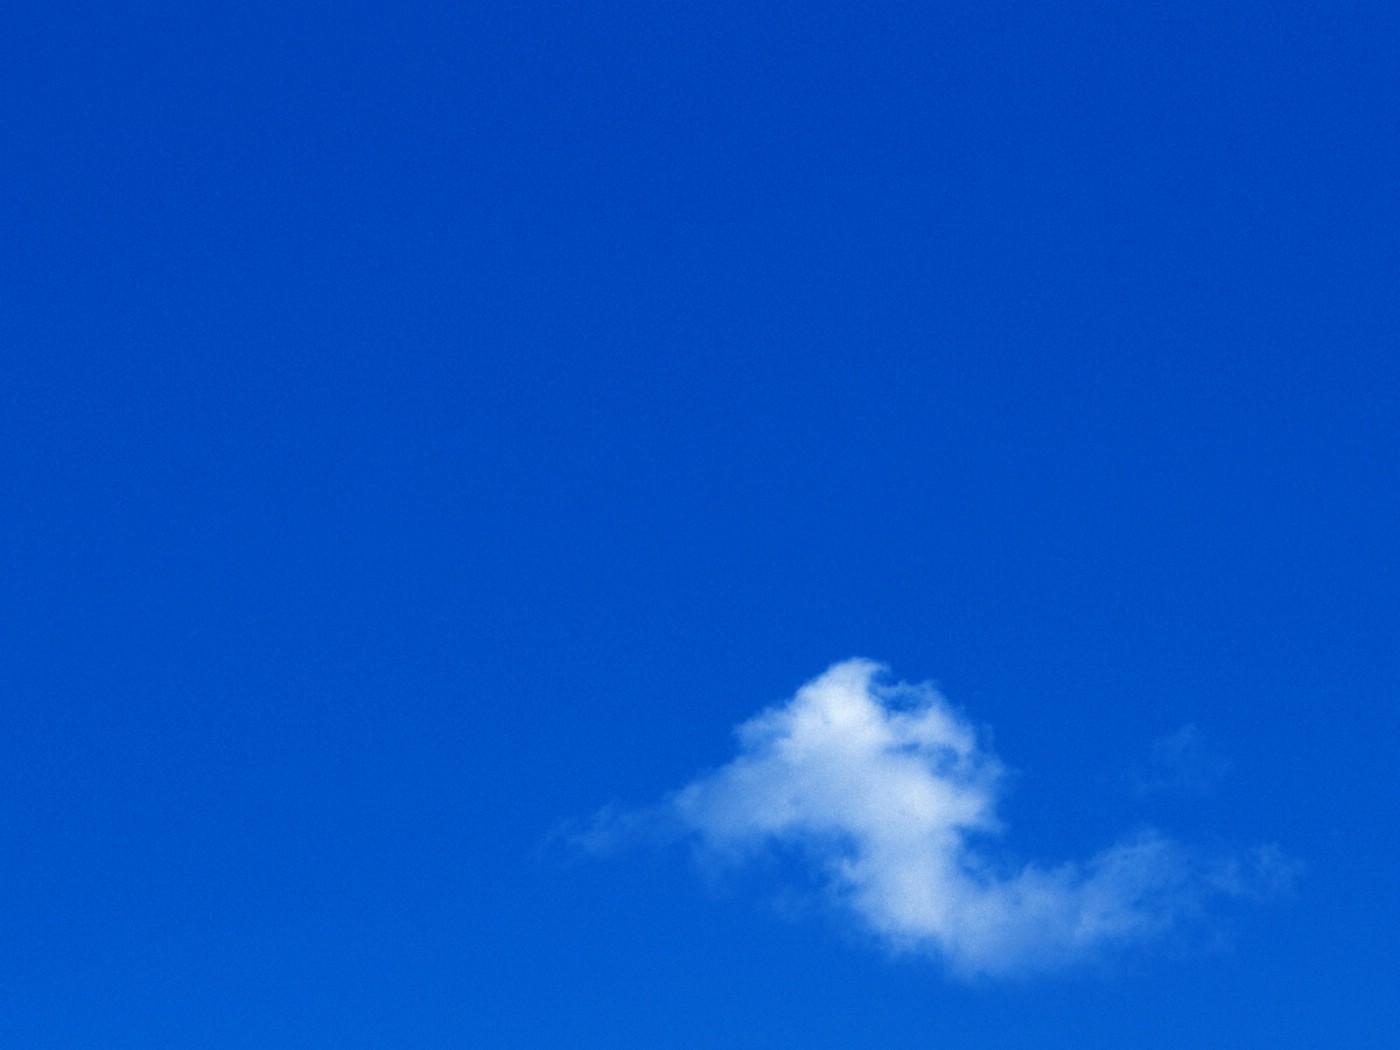 壁纸1400x1050 天空白云图片 天空云彩壁纸 蔚蓝天空-蓝天白云壁纸壁纸 蔚蓝天空-蓝天白云壁纸图片 蔚蓝天空-蓝天白云壁纸素材 风景壁纸 风景图库 风景图片素材桌面壁纸